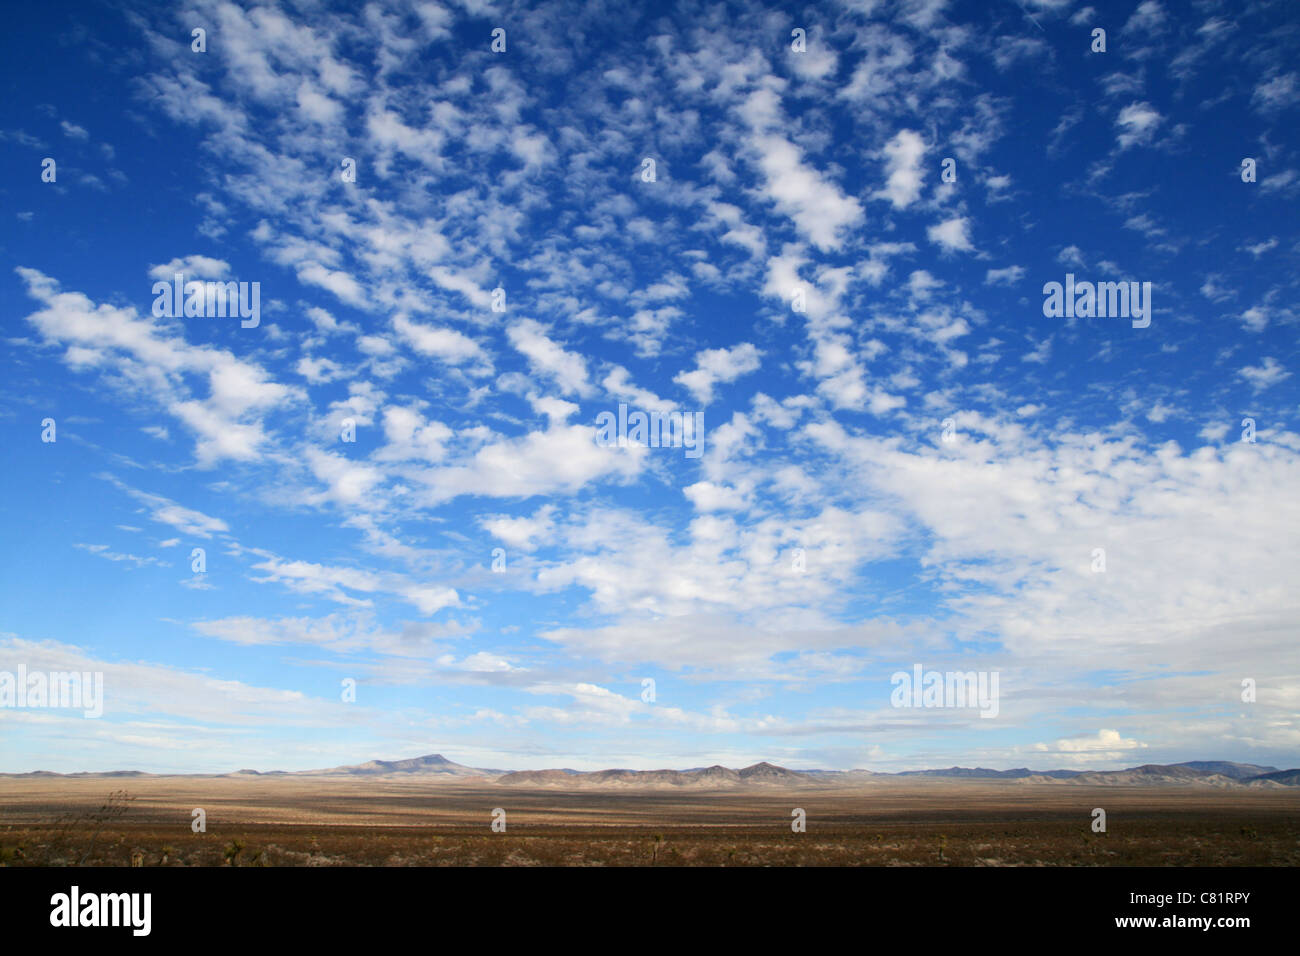 Big Sky en el desierto con nubes y llanuras vacías que conducen a las montañas distantes Foto de stock